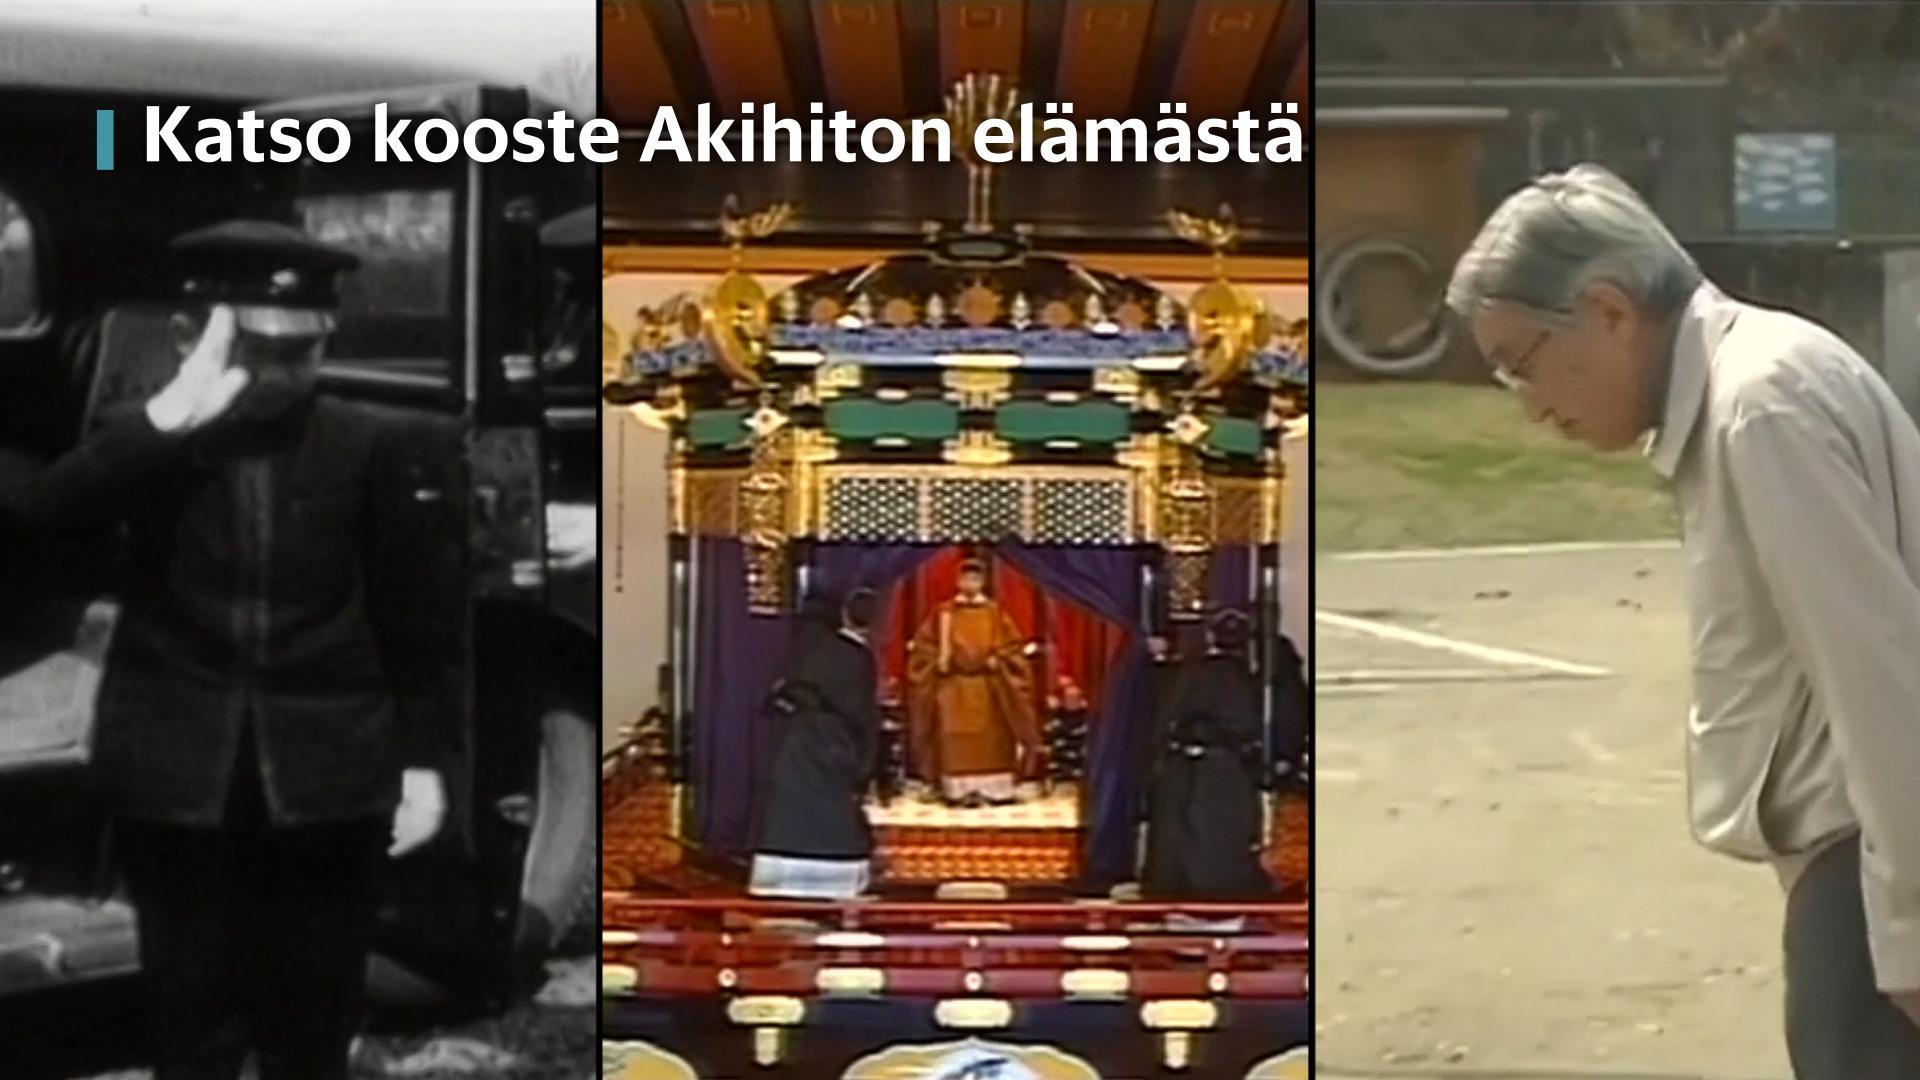 Katso videokooste Japanin aiemman keisarin Akihiton elämästä